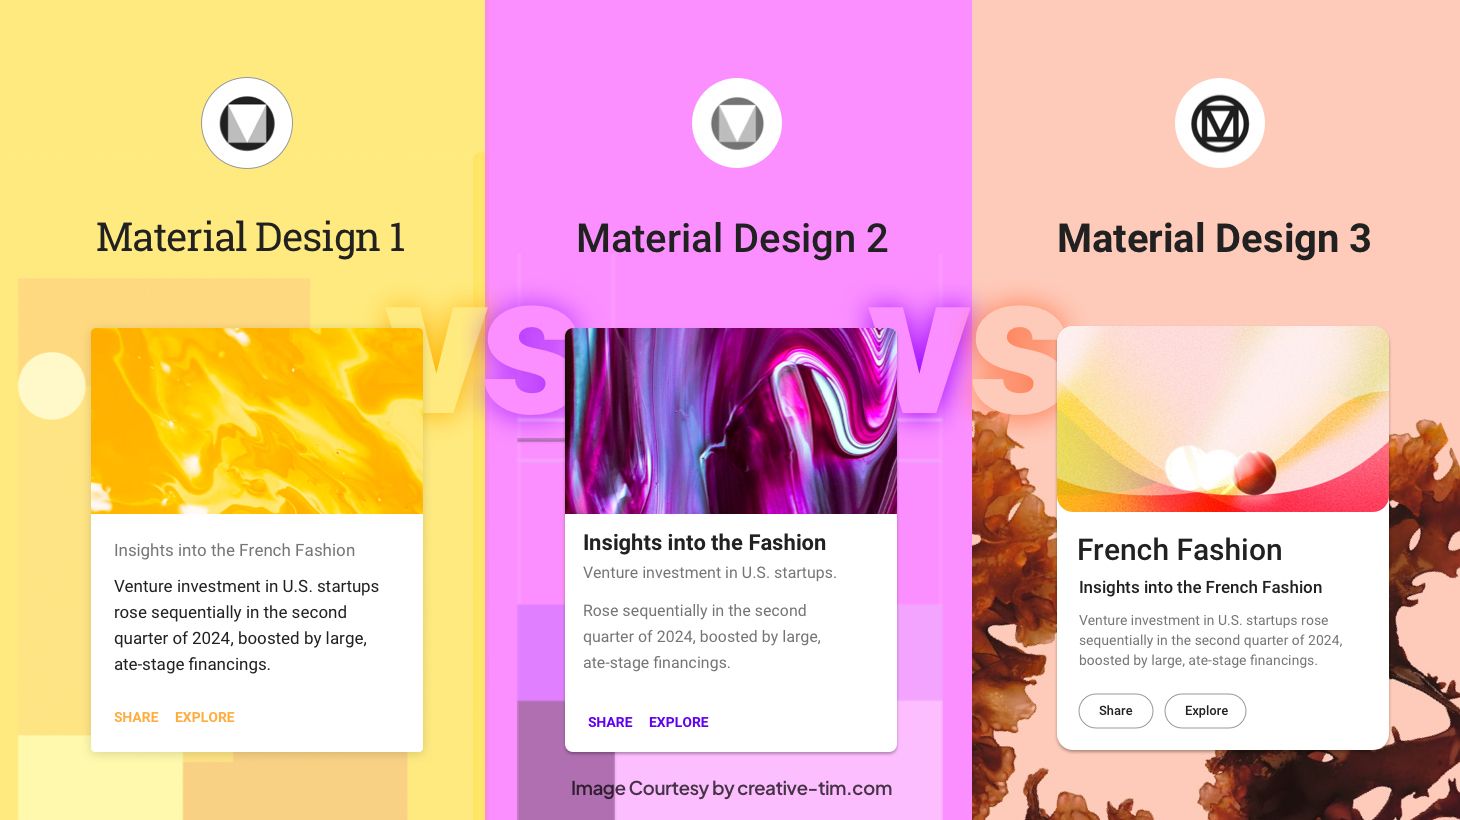 Material Design 1 vs Material Design 2 vs Material Design 3